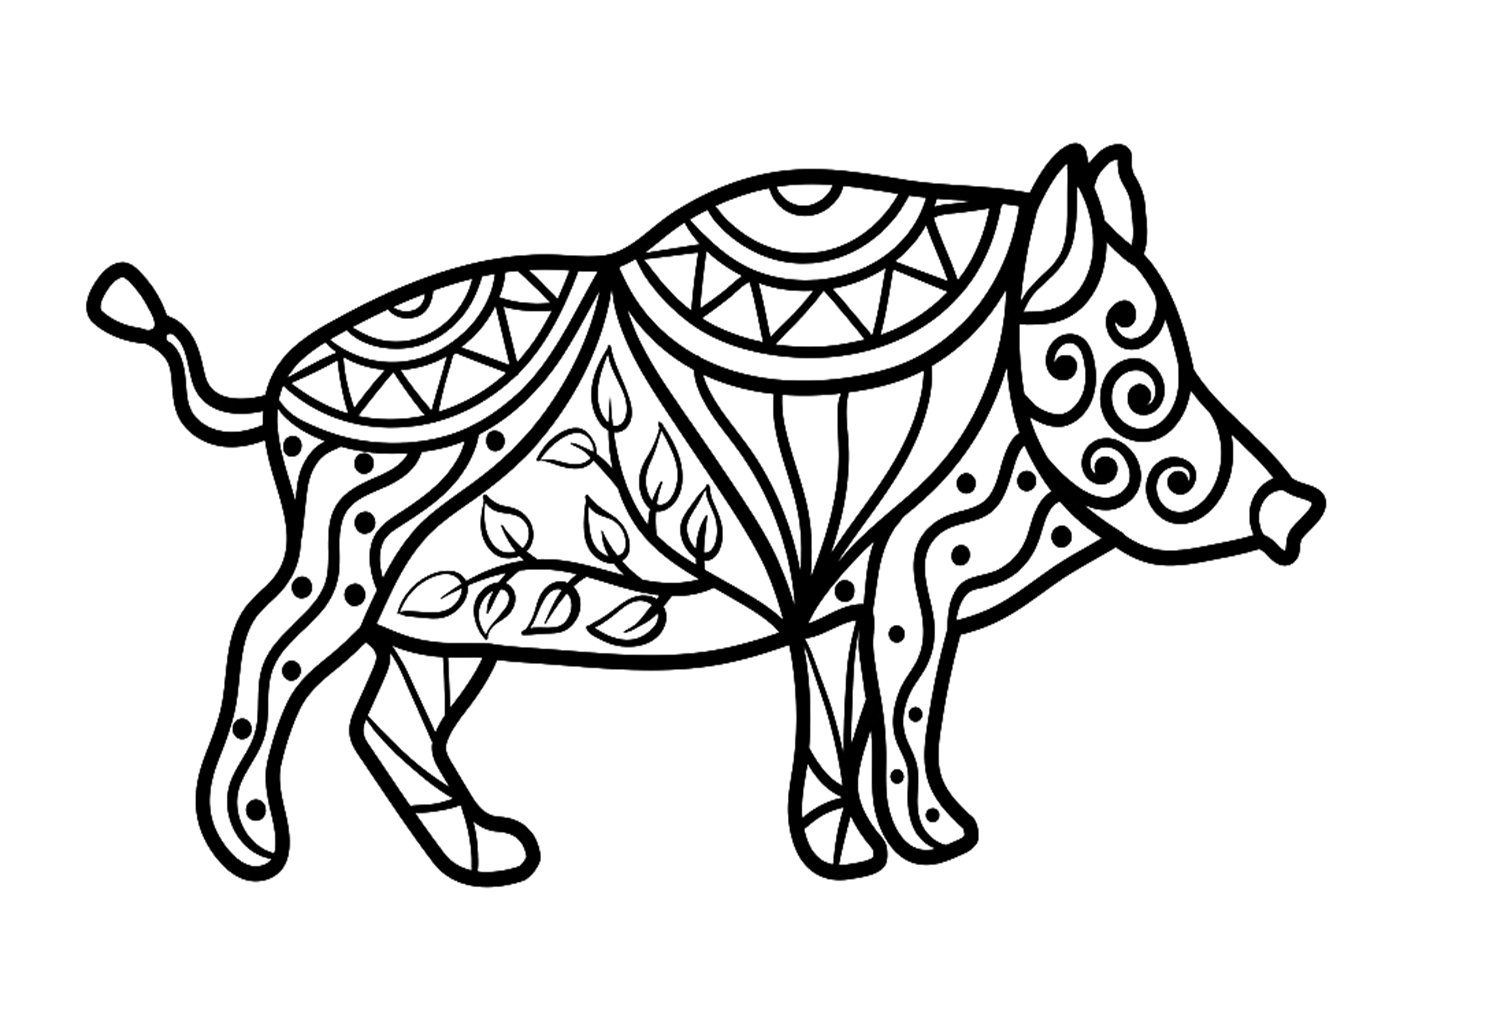 Mandala Boar from Boar